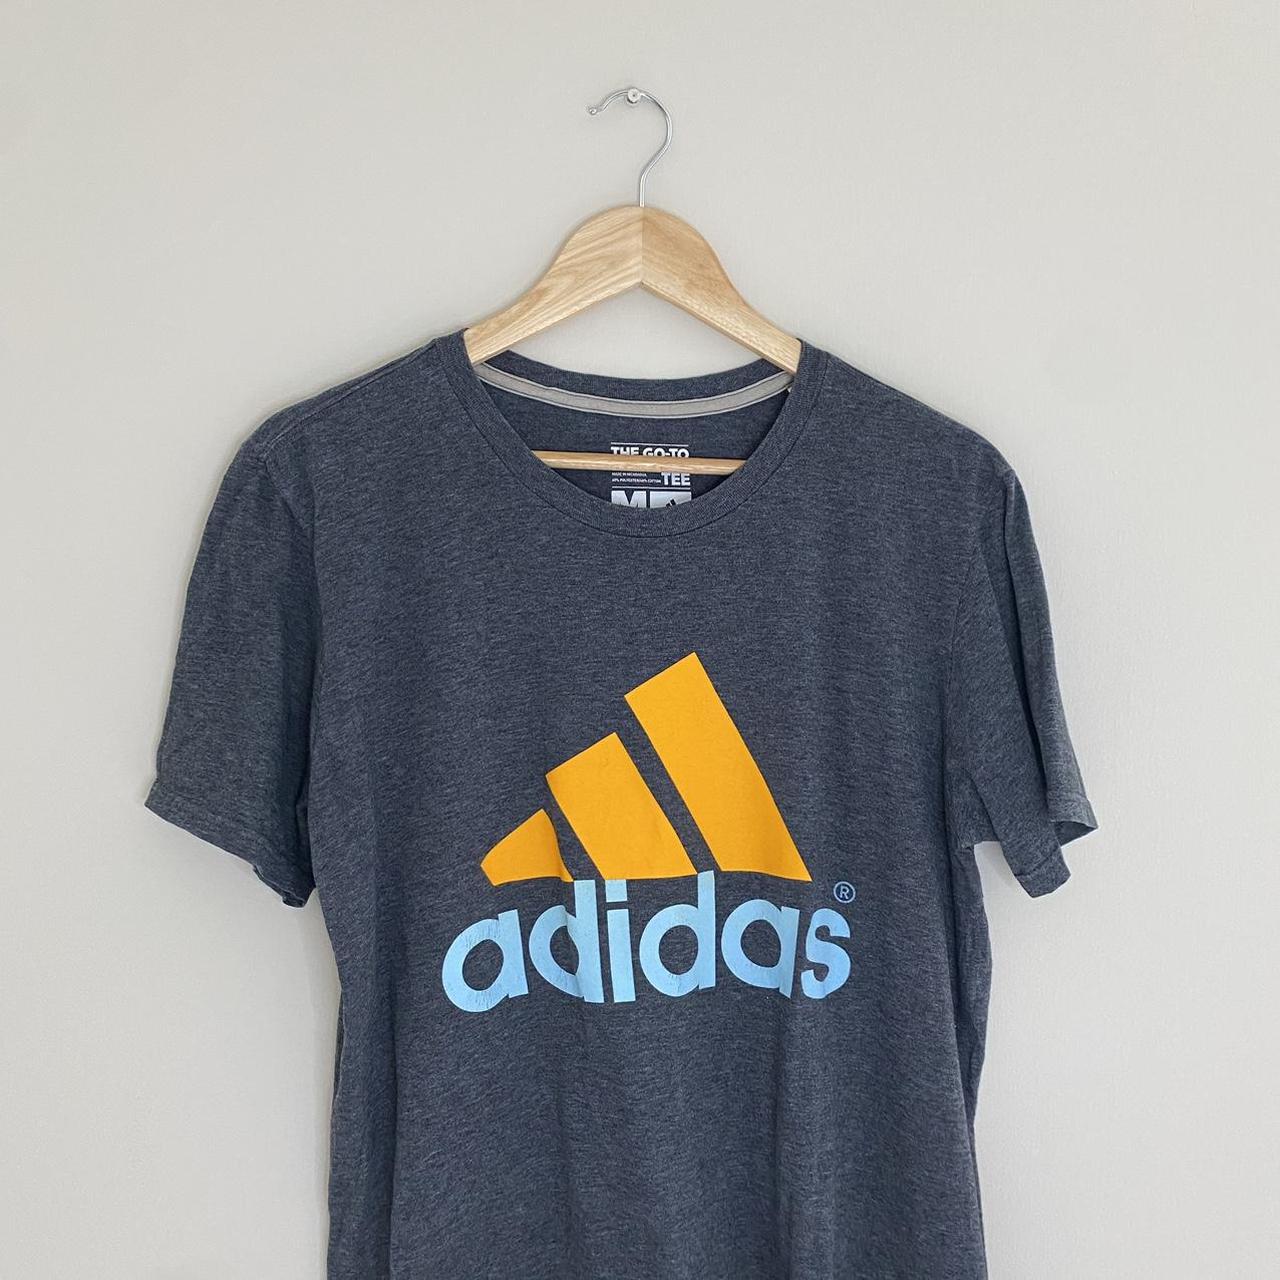 Adidas logo T-shirt - Printed logo - Grey, orange... - Depop